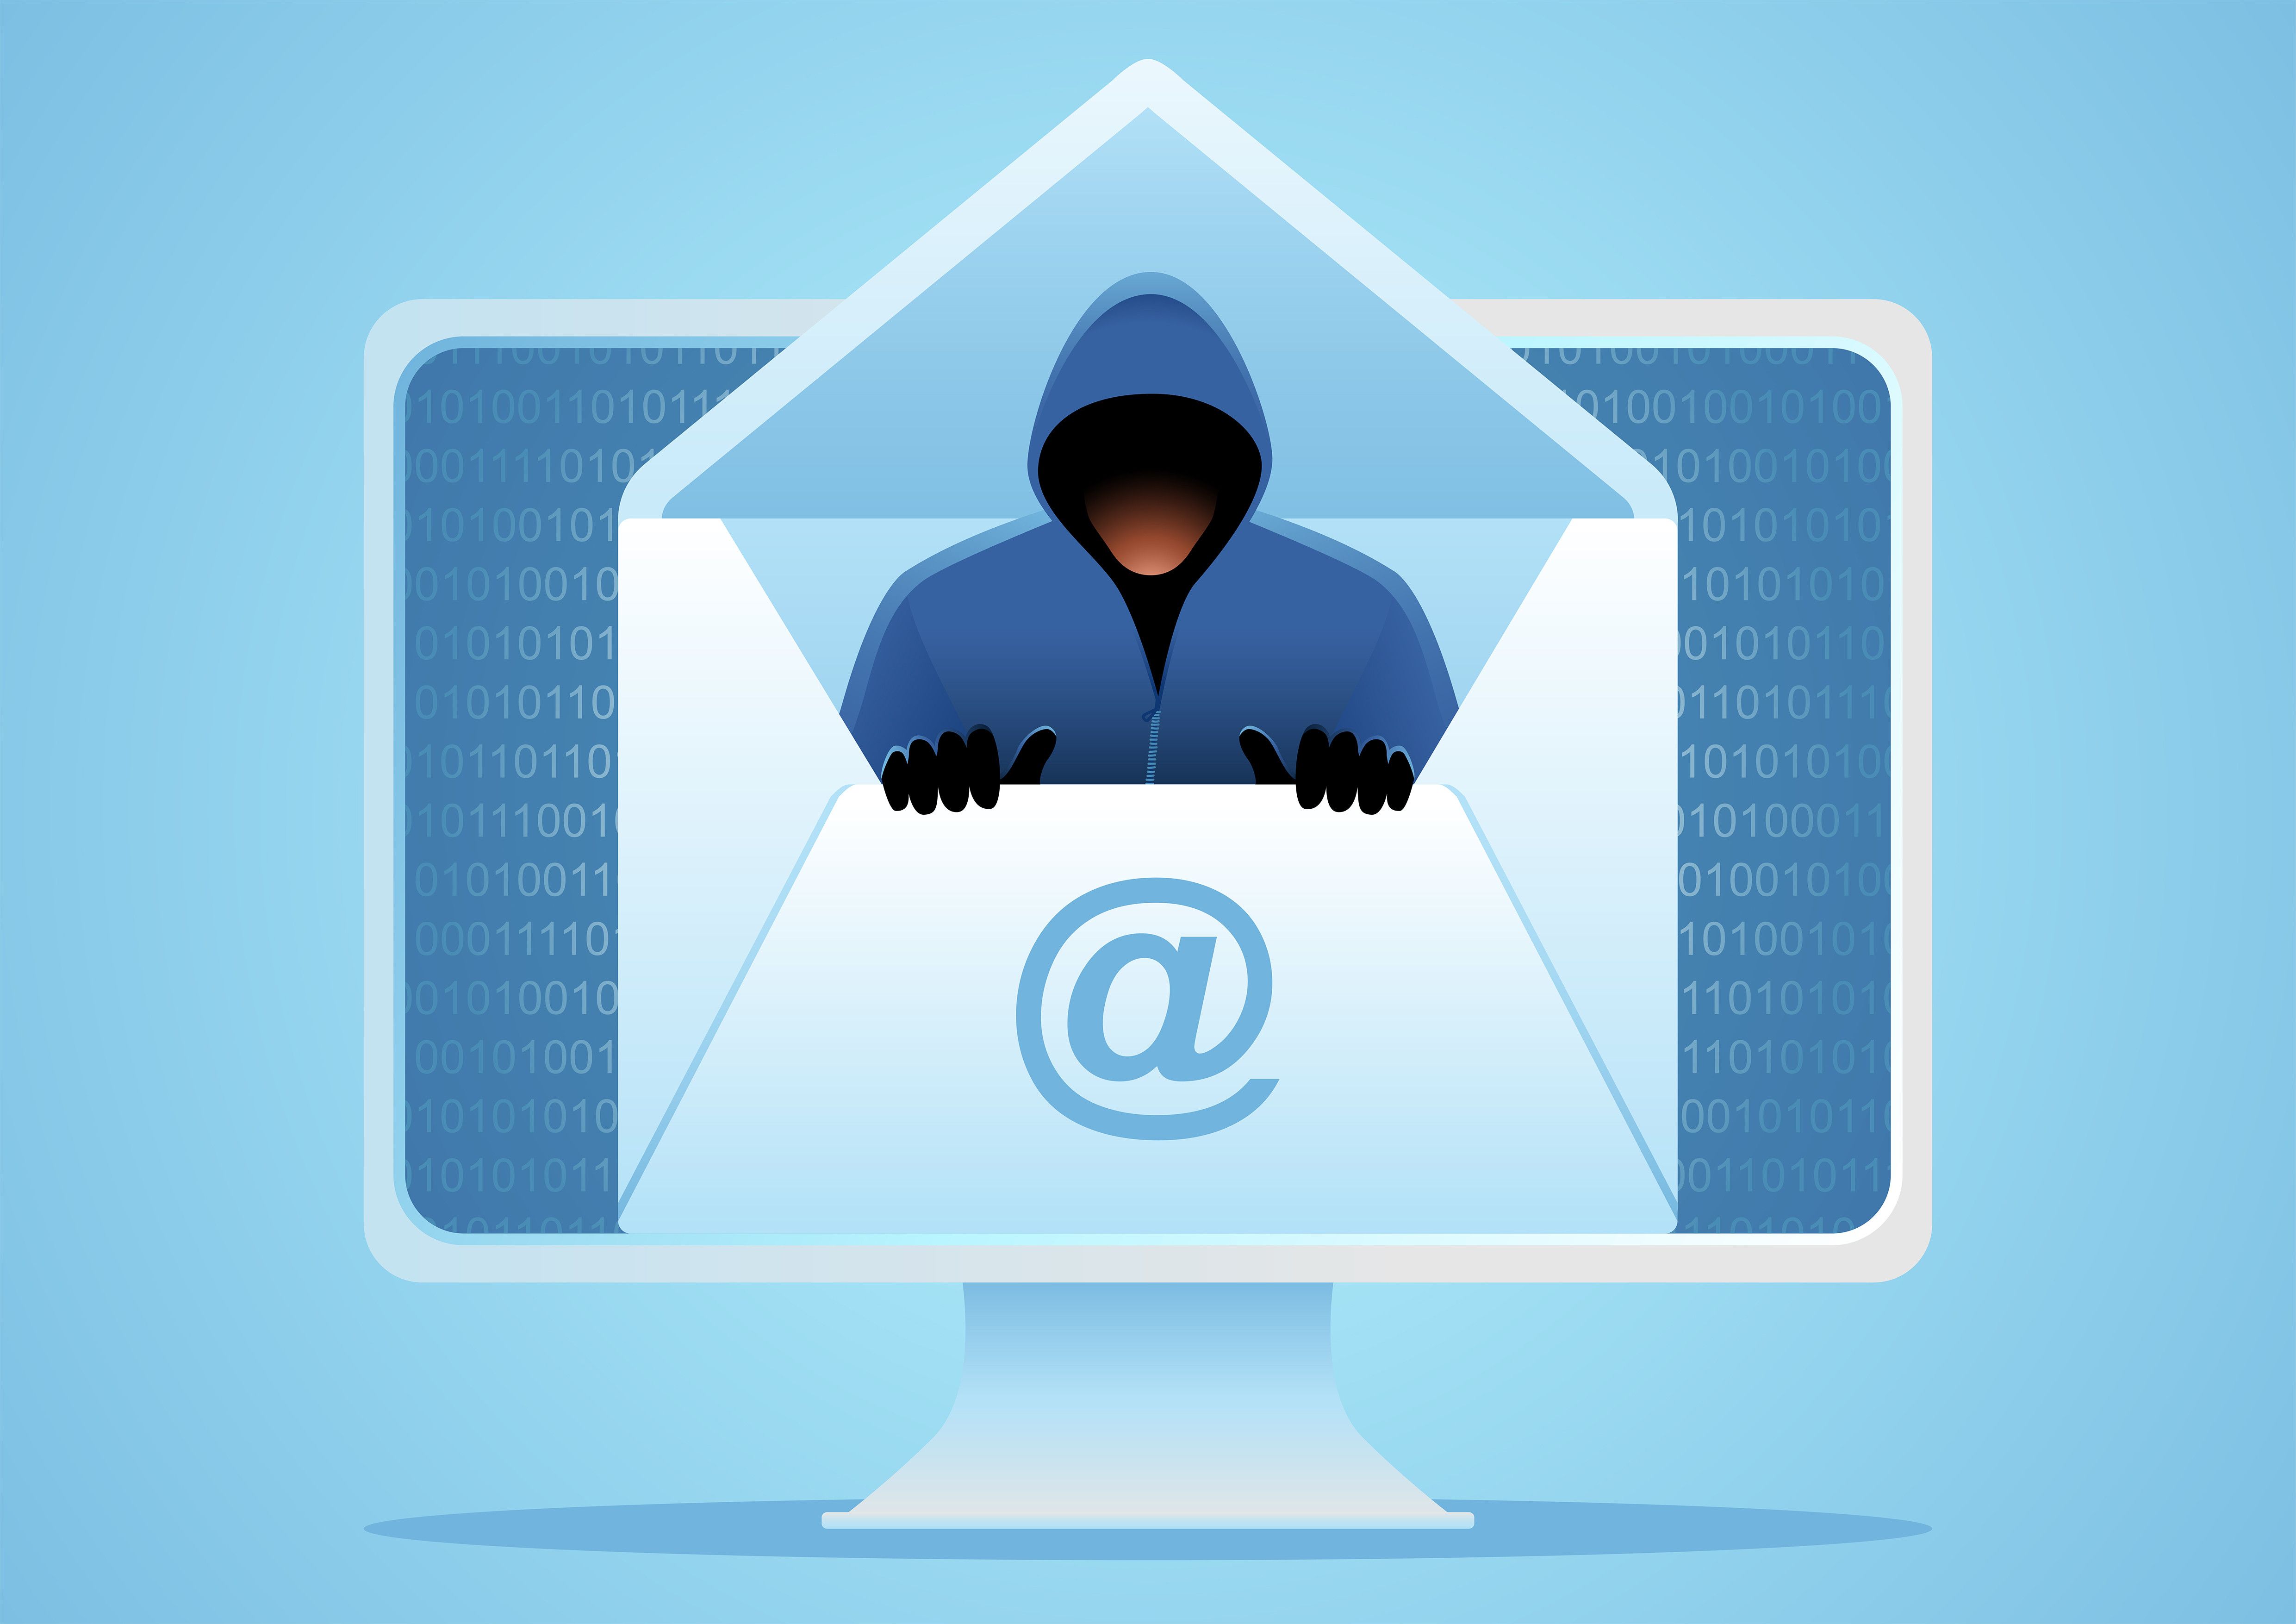 Una campaña de phishing apunta a los usuarios del gestor de correo Zimbra